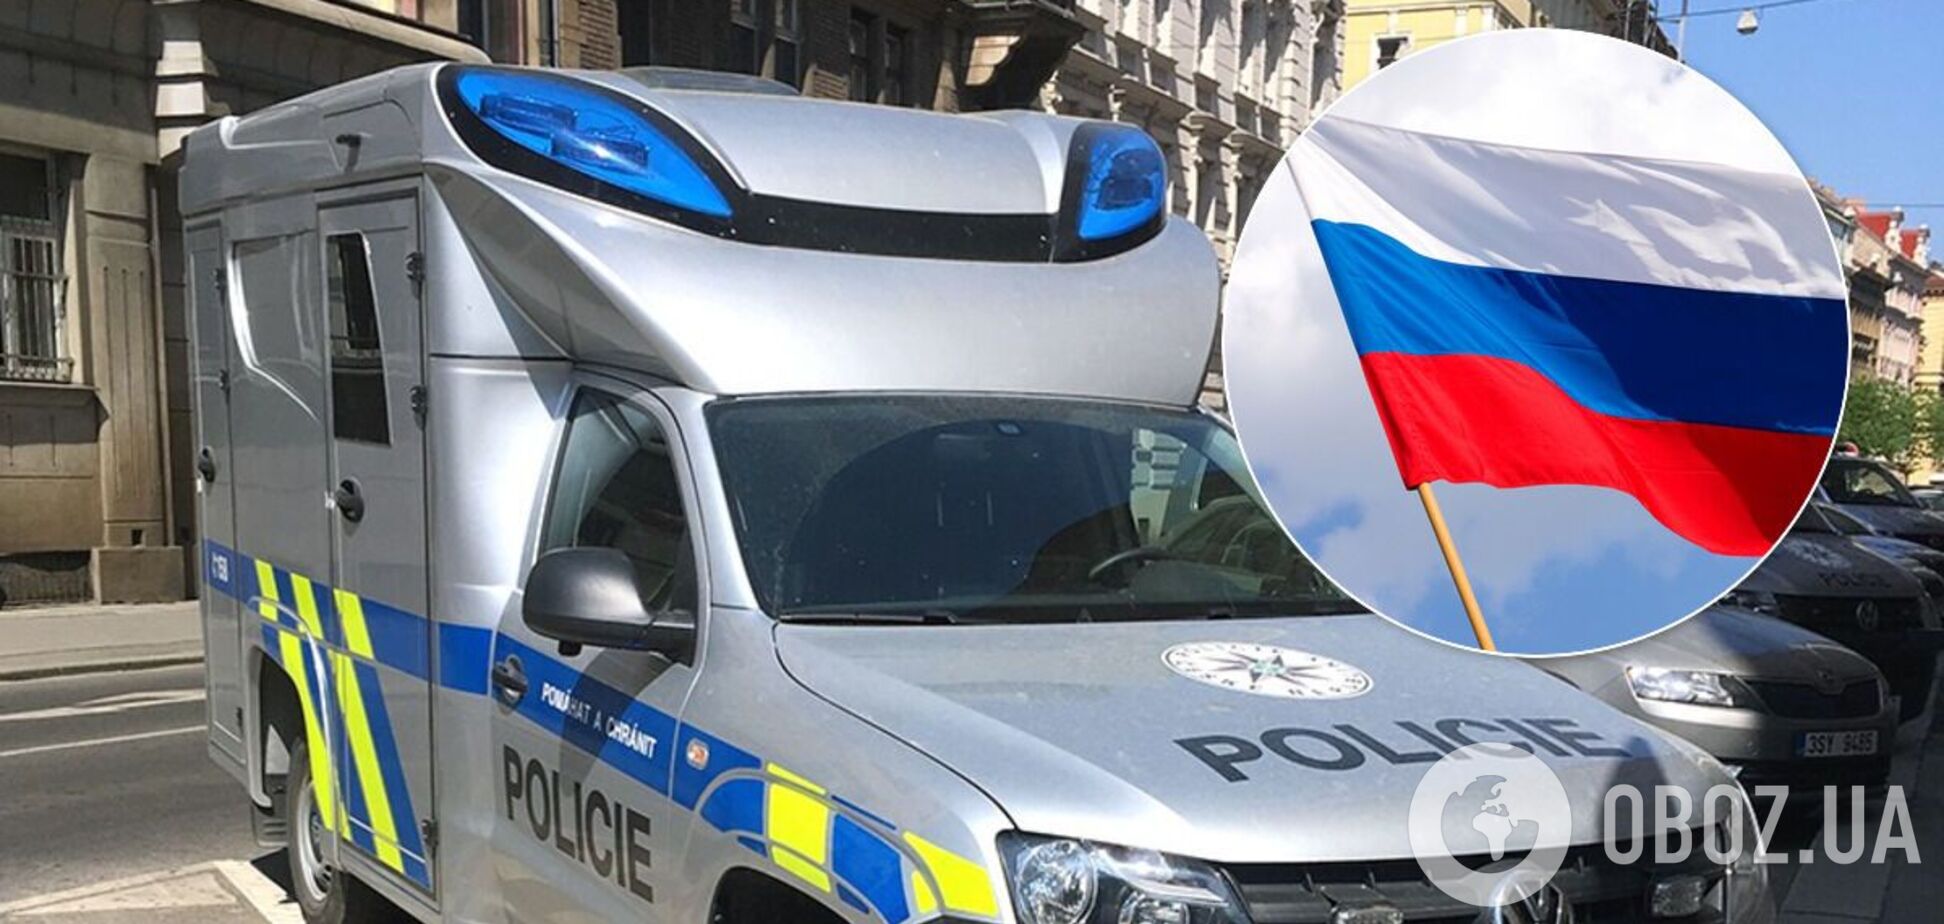 Дипломата из РФ задержали в Чехии